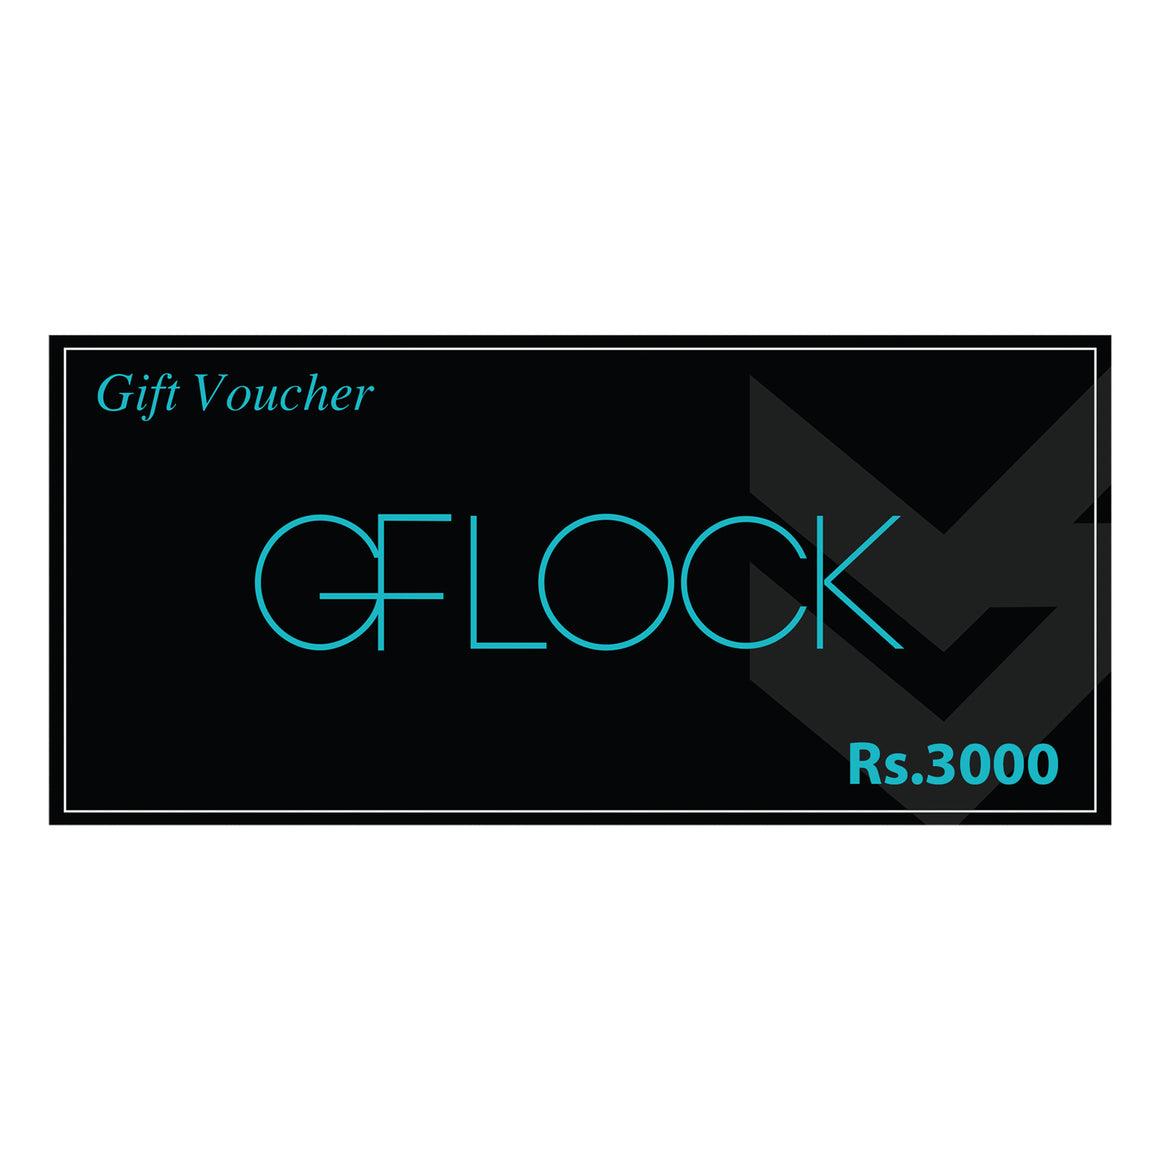 GFLOCK GIFT VOUCHER - LKR 3000